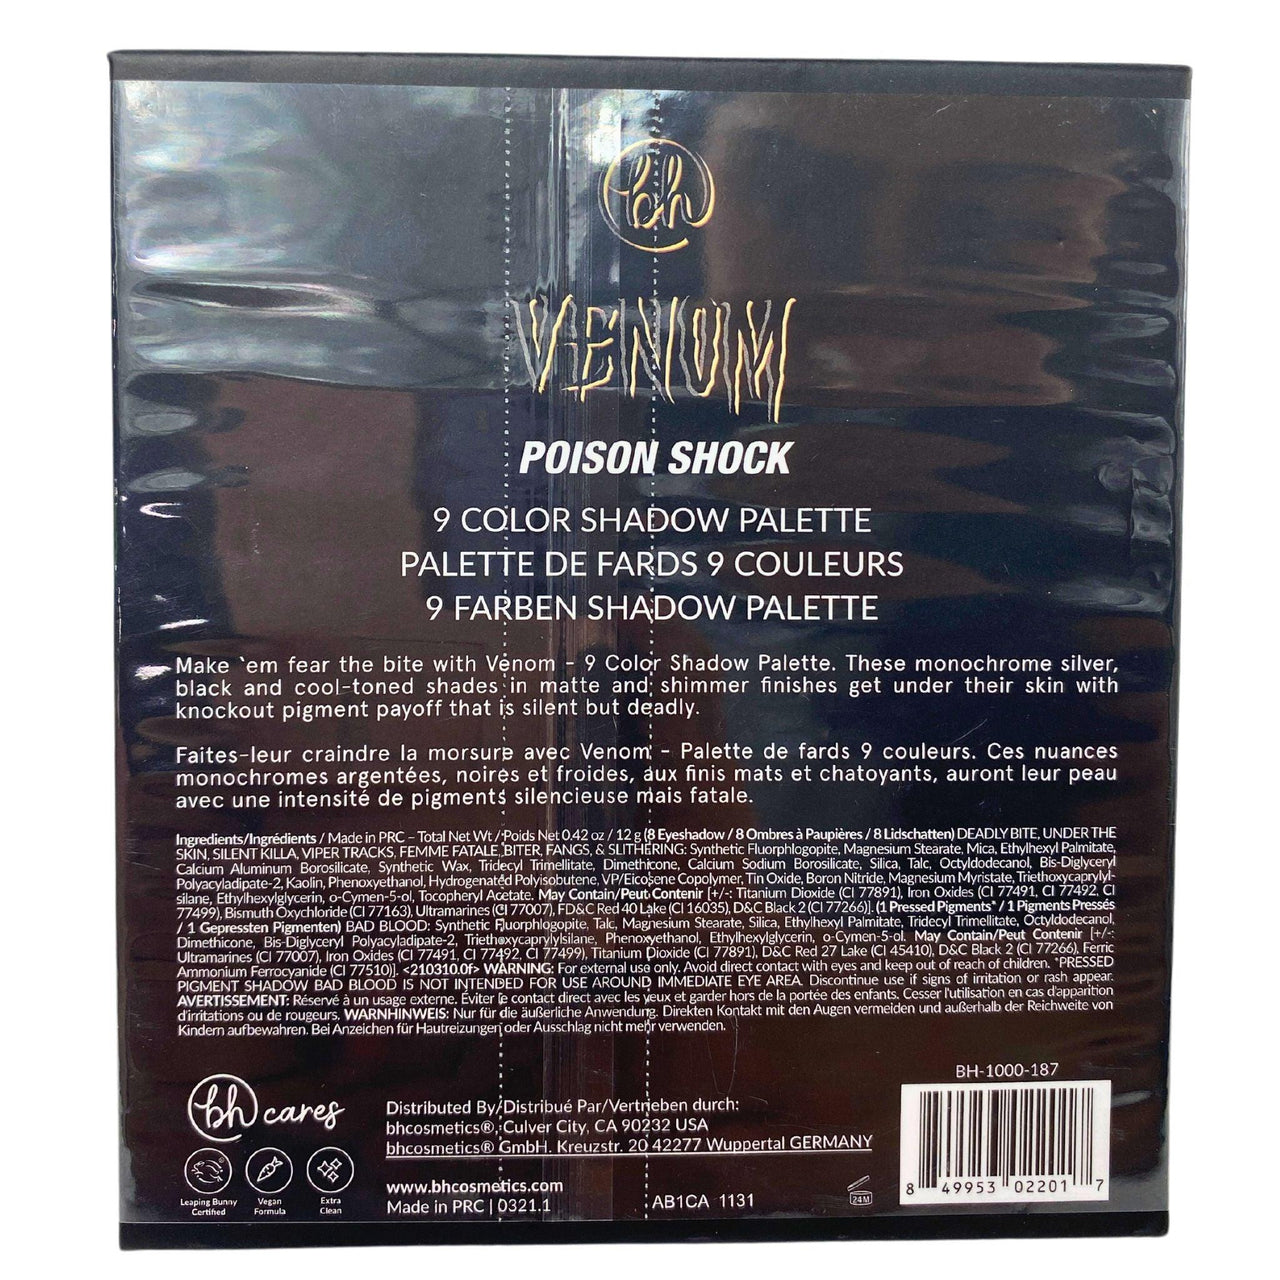 BH Cosmetics Venom Poison Shock 9 Color Shadow Palette (30 Pcs Lot) - Discount Wholesalers Inc